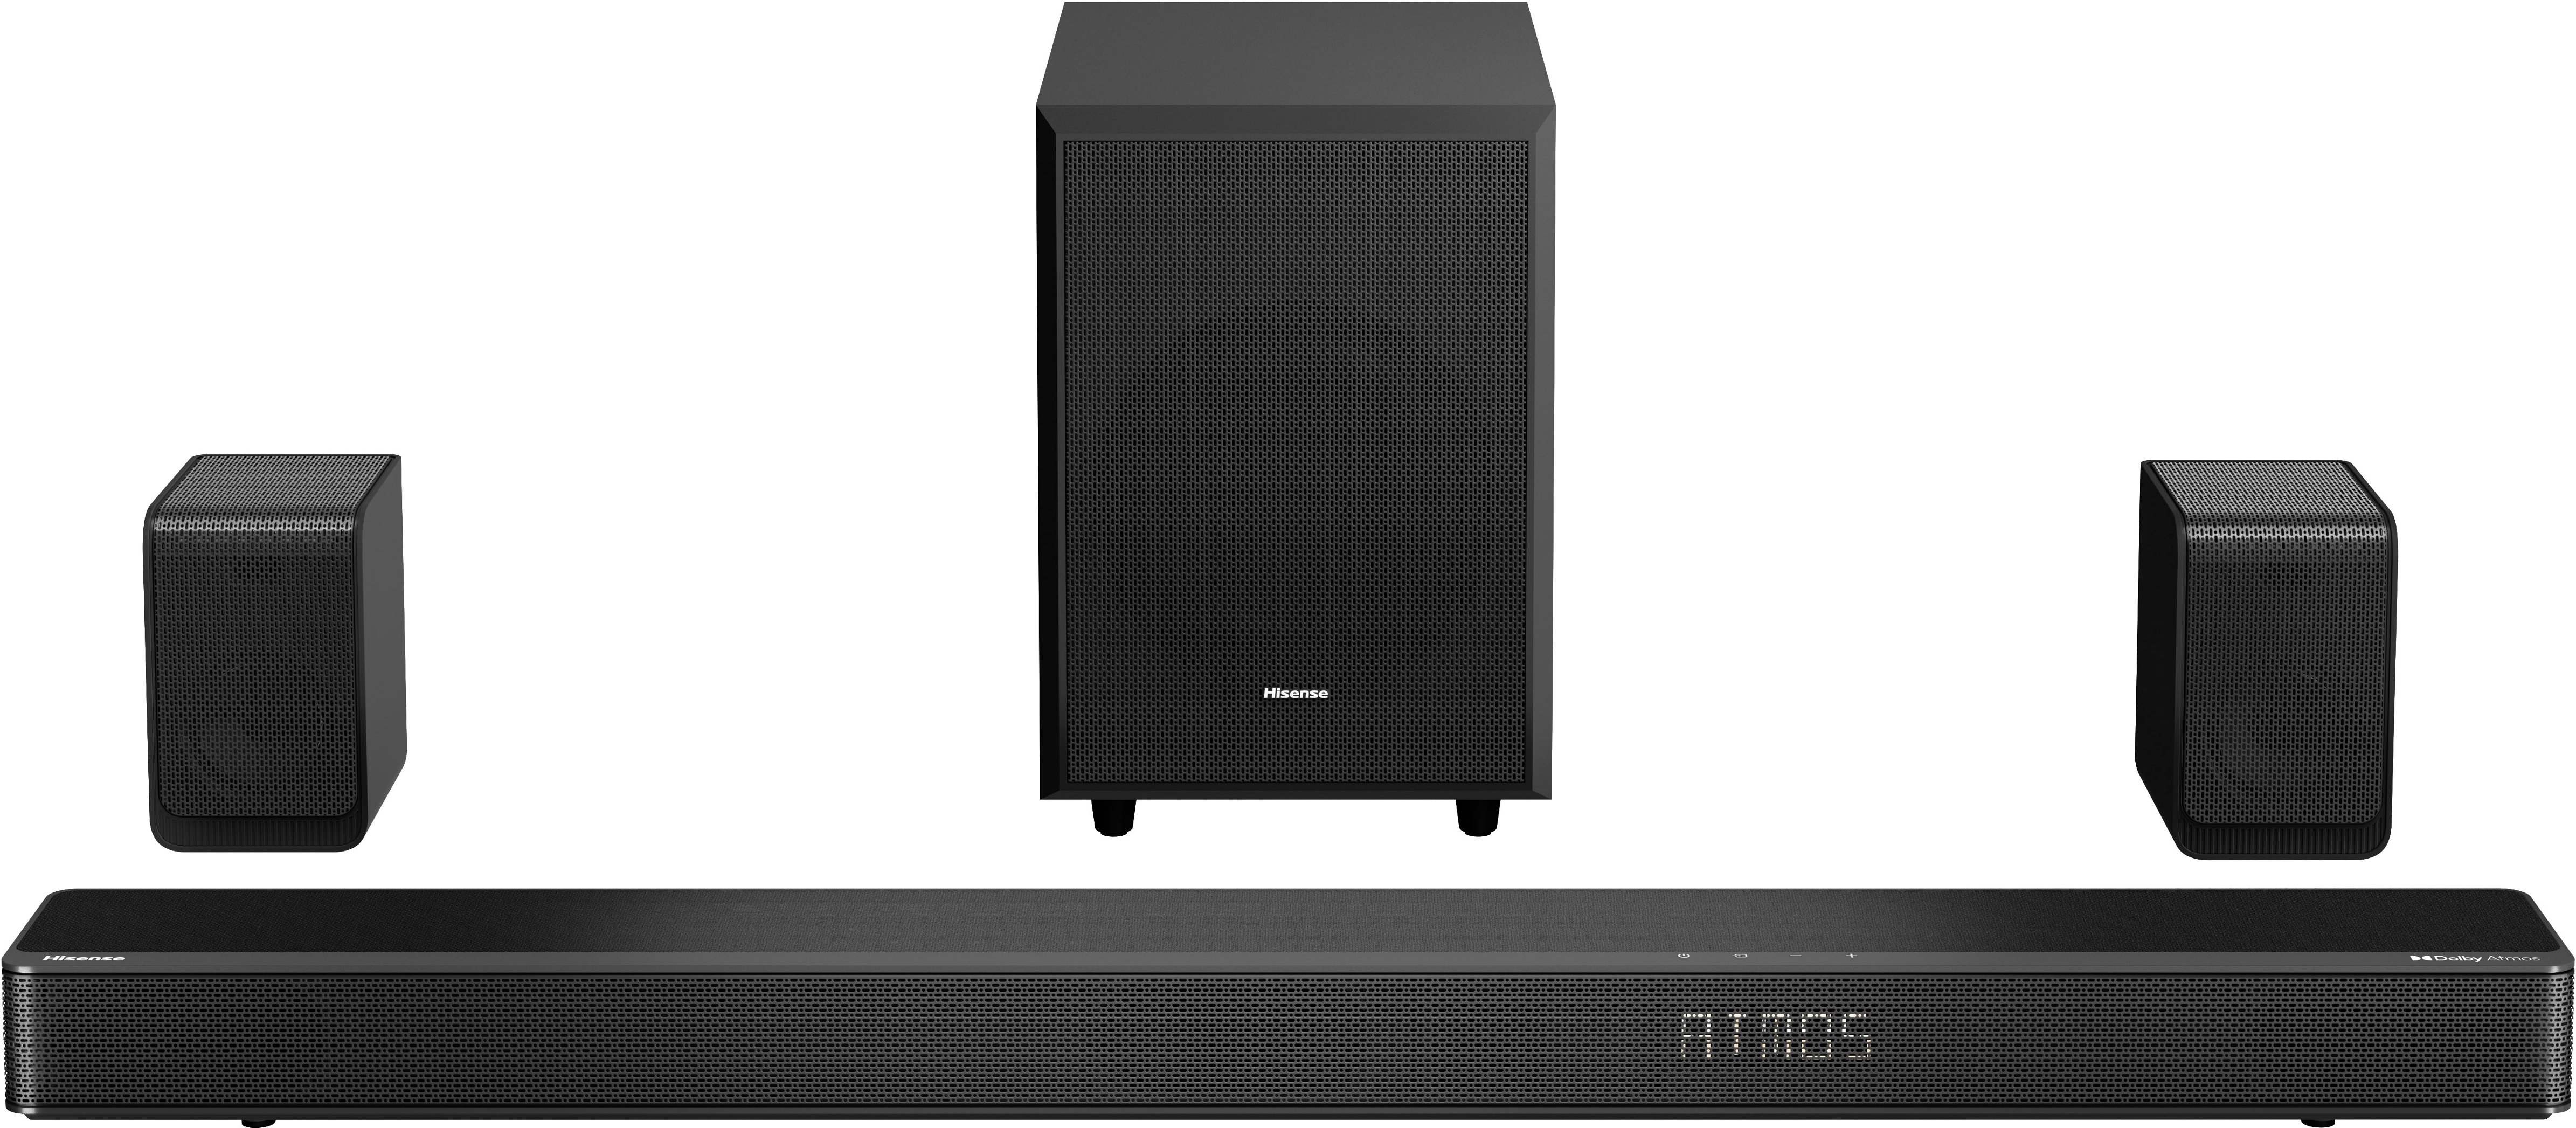 Vizio M-Series 5.1.2 Soundbar System Review: Affordable Atmos Sound